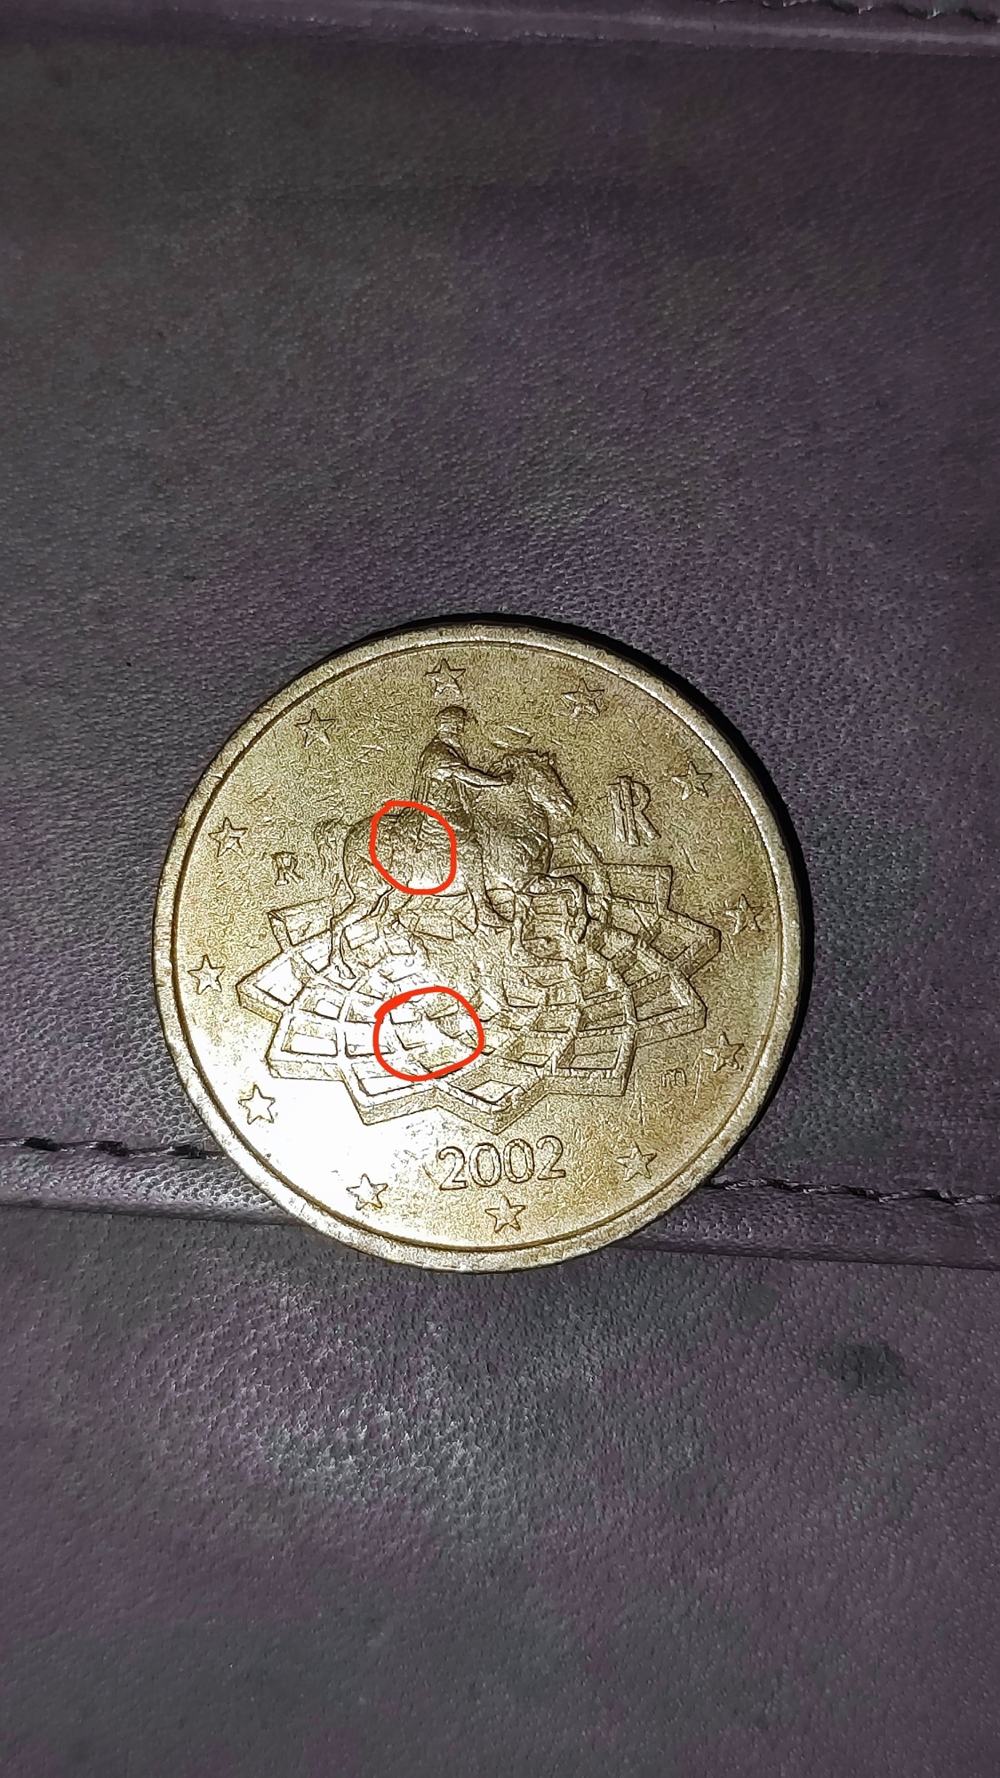 Italienische 50 Cent Münze aus 2002